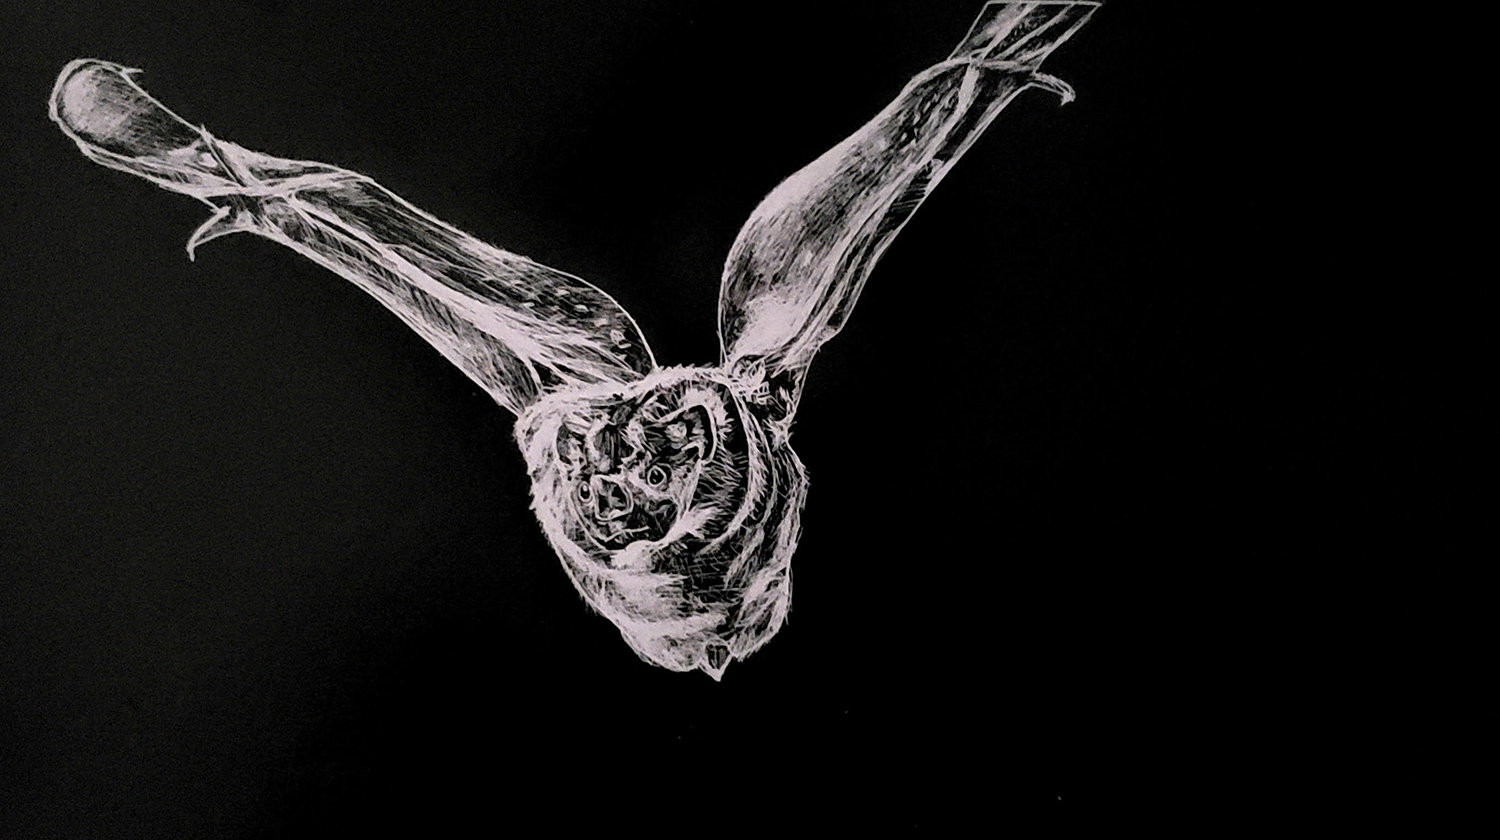 Transylvania flying bat art video highlights value of interdependence